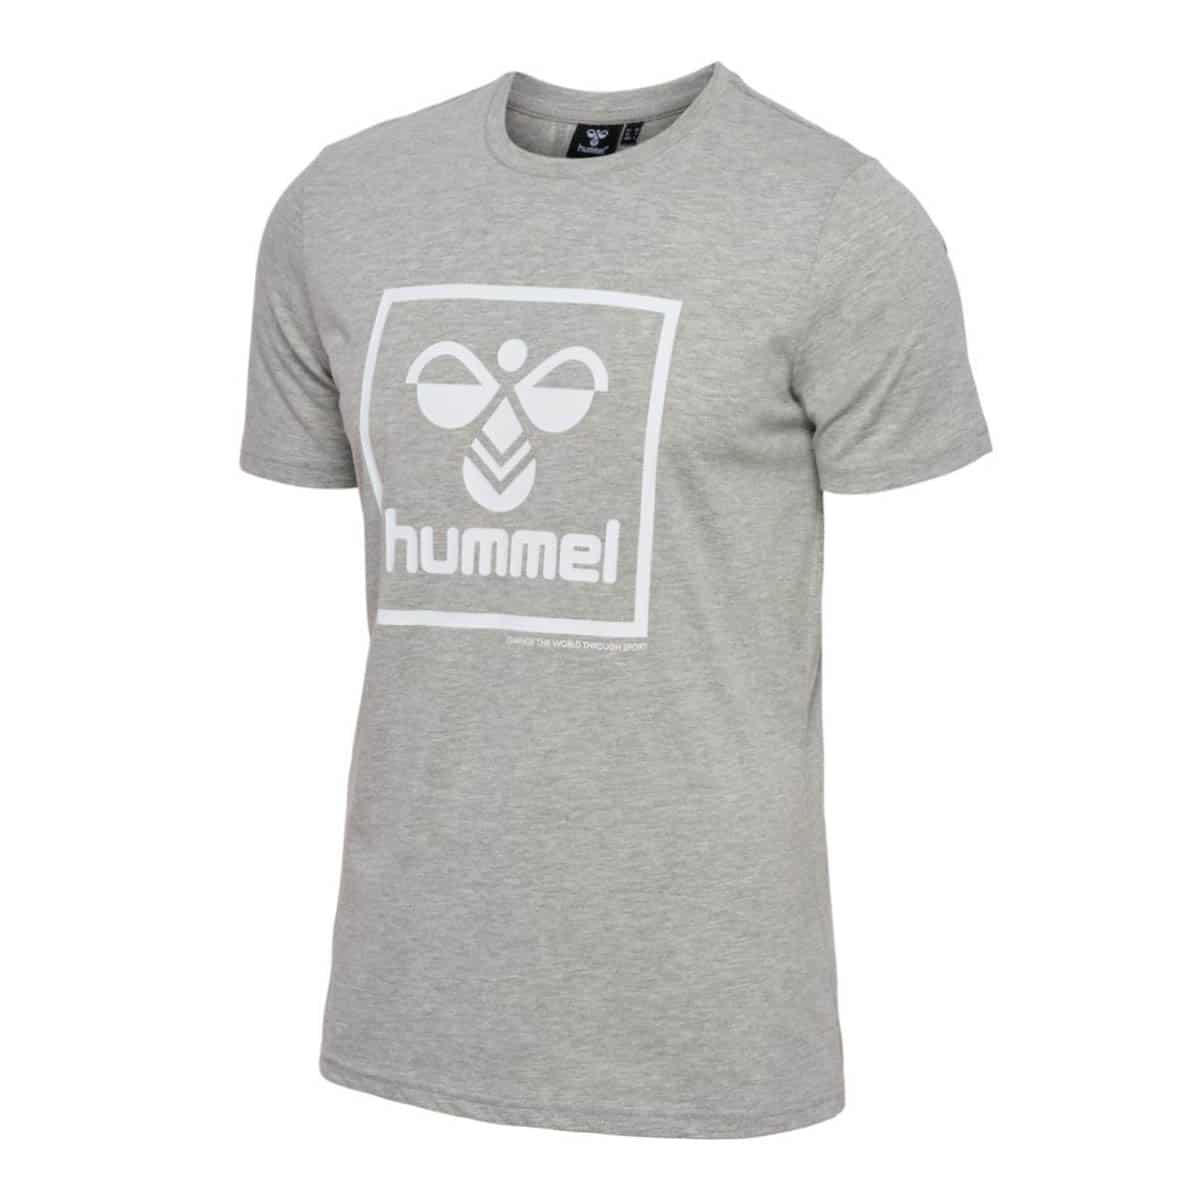 Hummel Hummel T-shirts Grå - XL